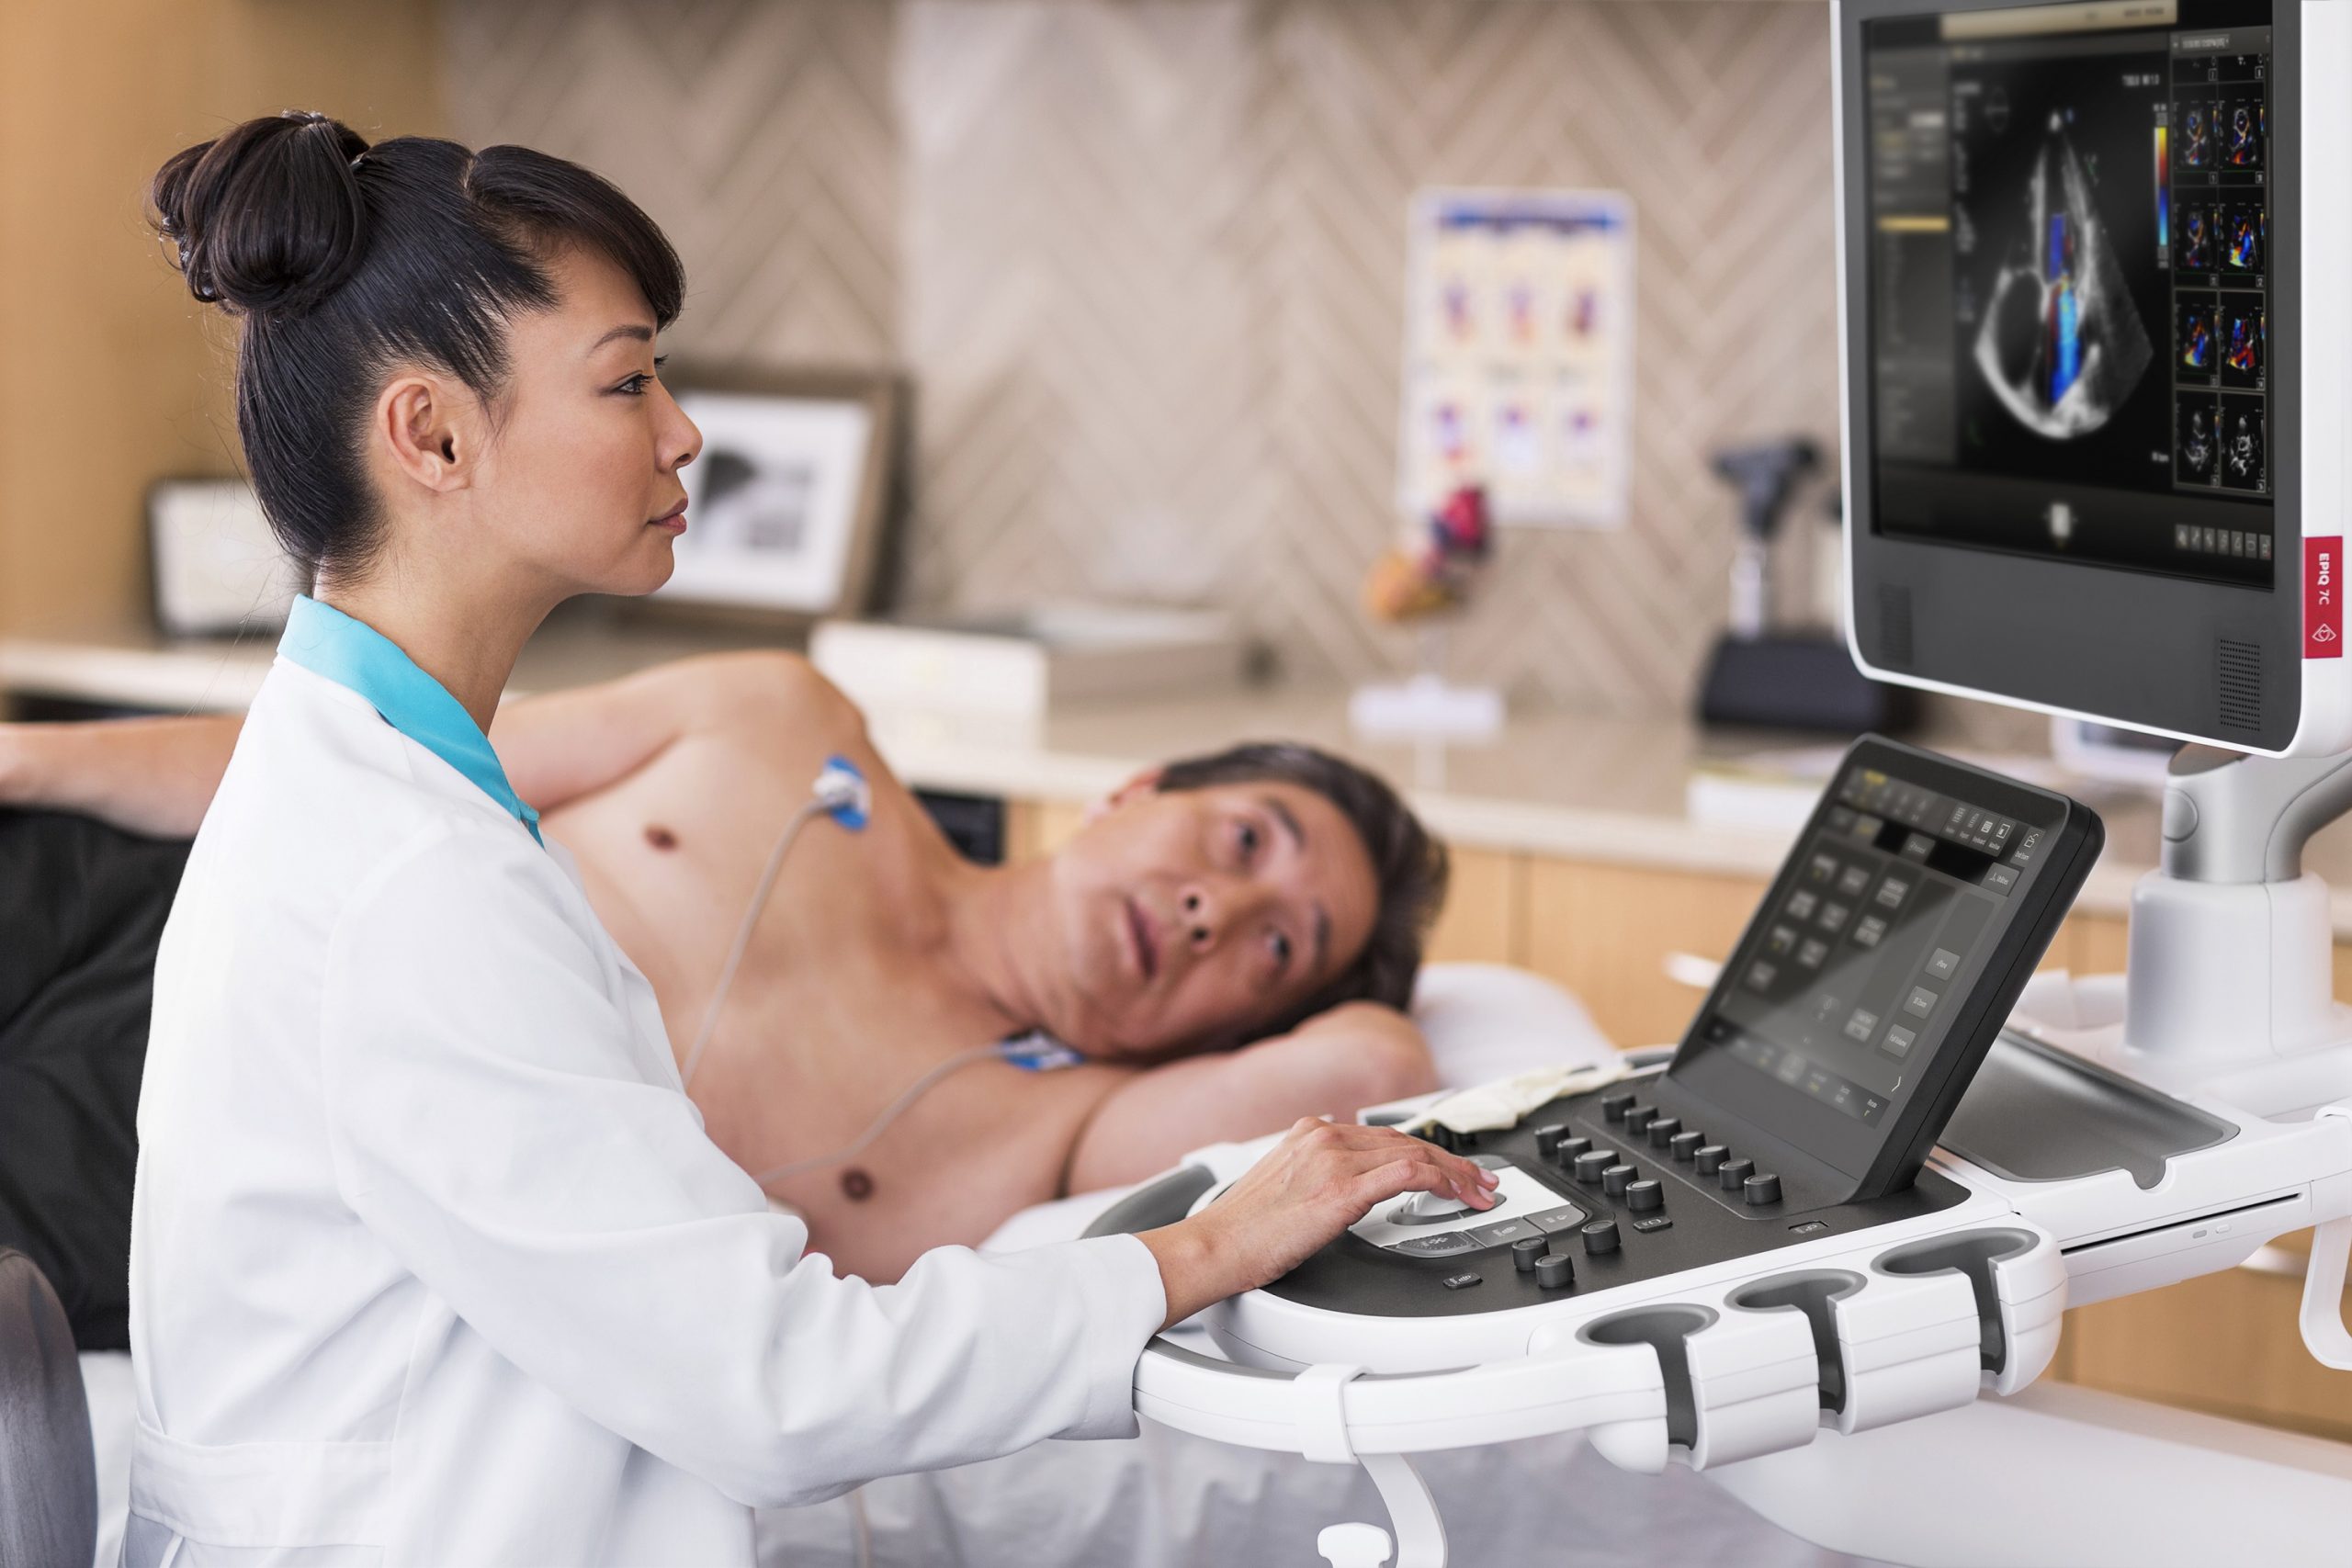 องค์การอาหารและยาแห่งสหรัฐอเมริกา อนุมัติให้ Philips Ultrasound ใช้ในการวินิจฉัยและติดตามอาการทางปอดและหัวใจในผู้ป่วยโควิด-19 ได้